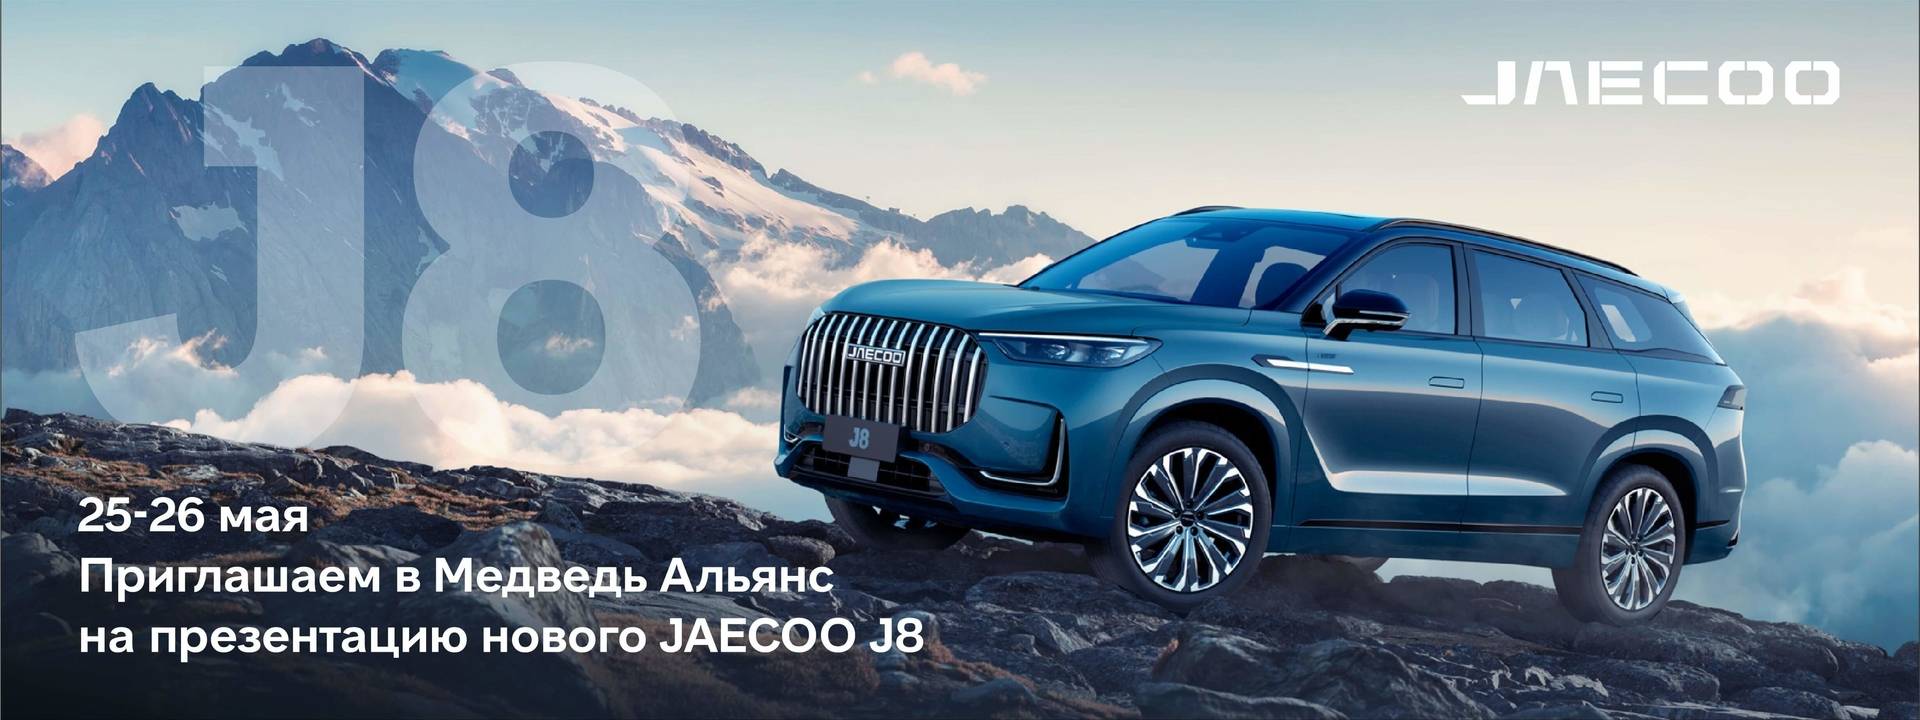 Новый кроссовер бизнес-класса JAECOO J8 уже в Медведь Альянс!